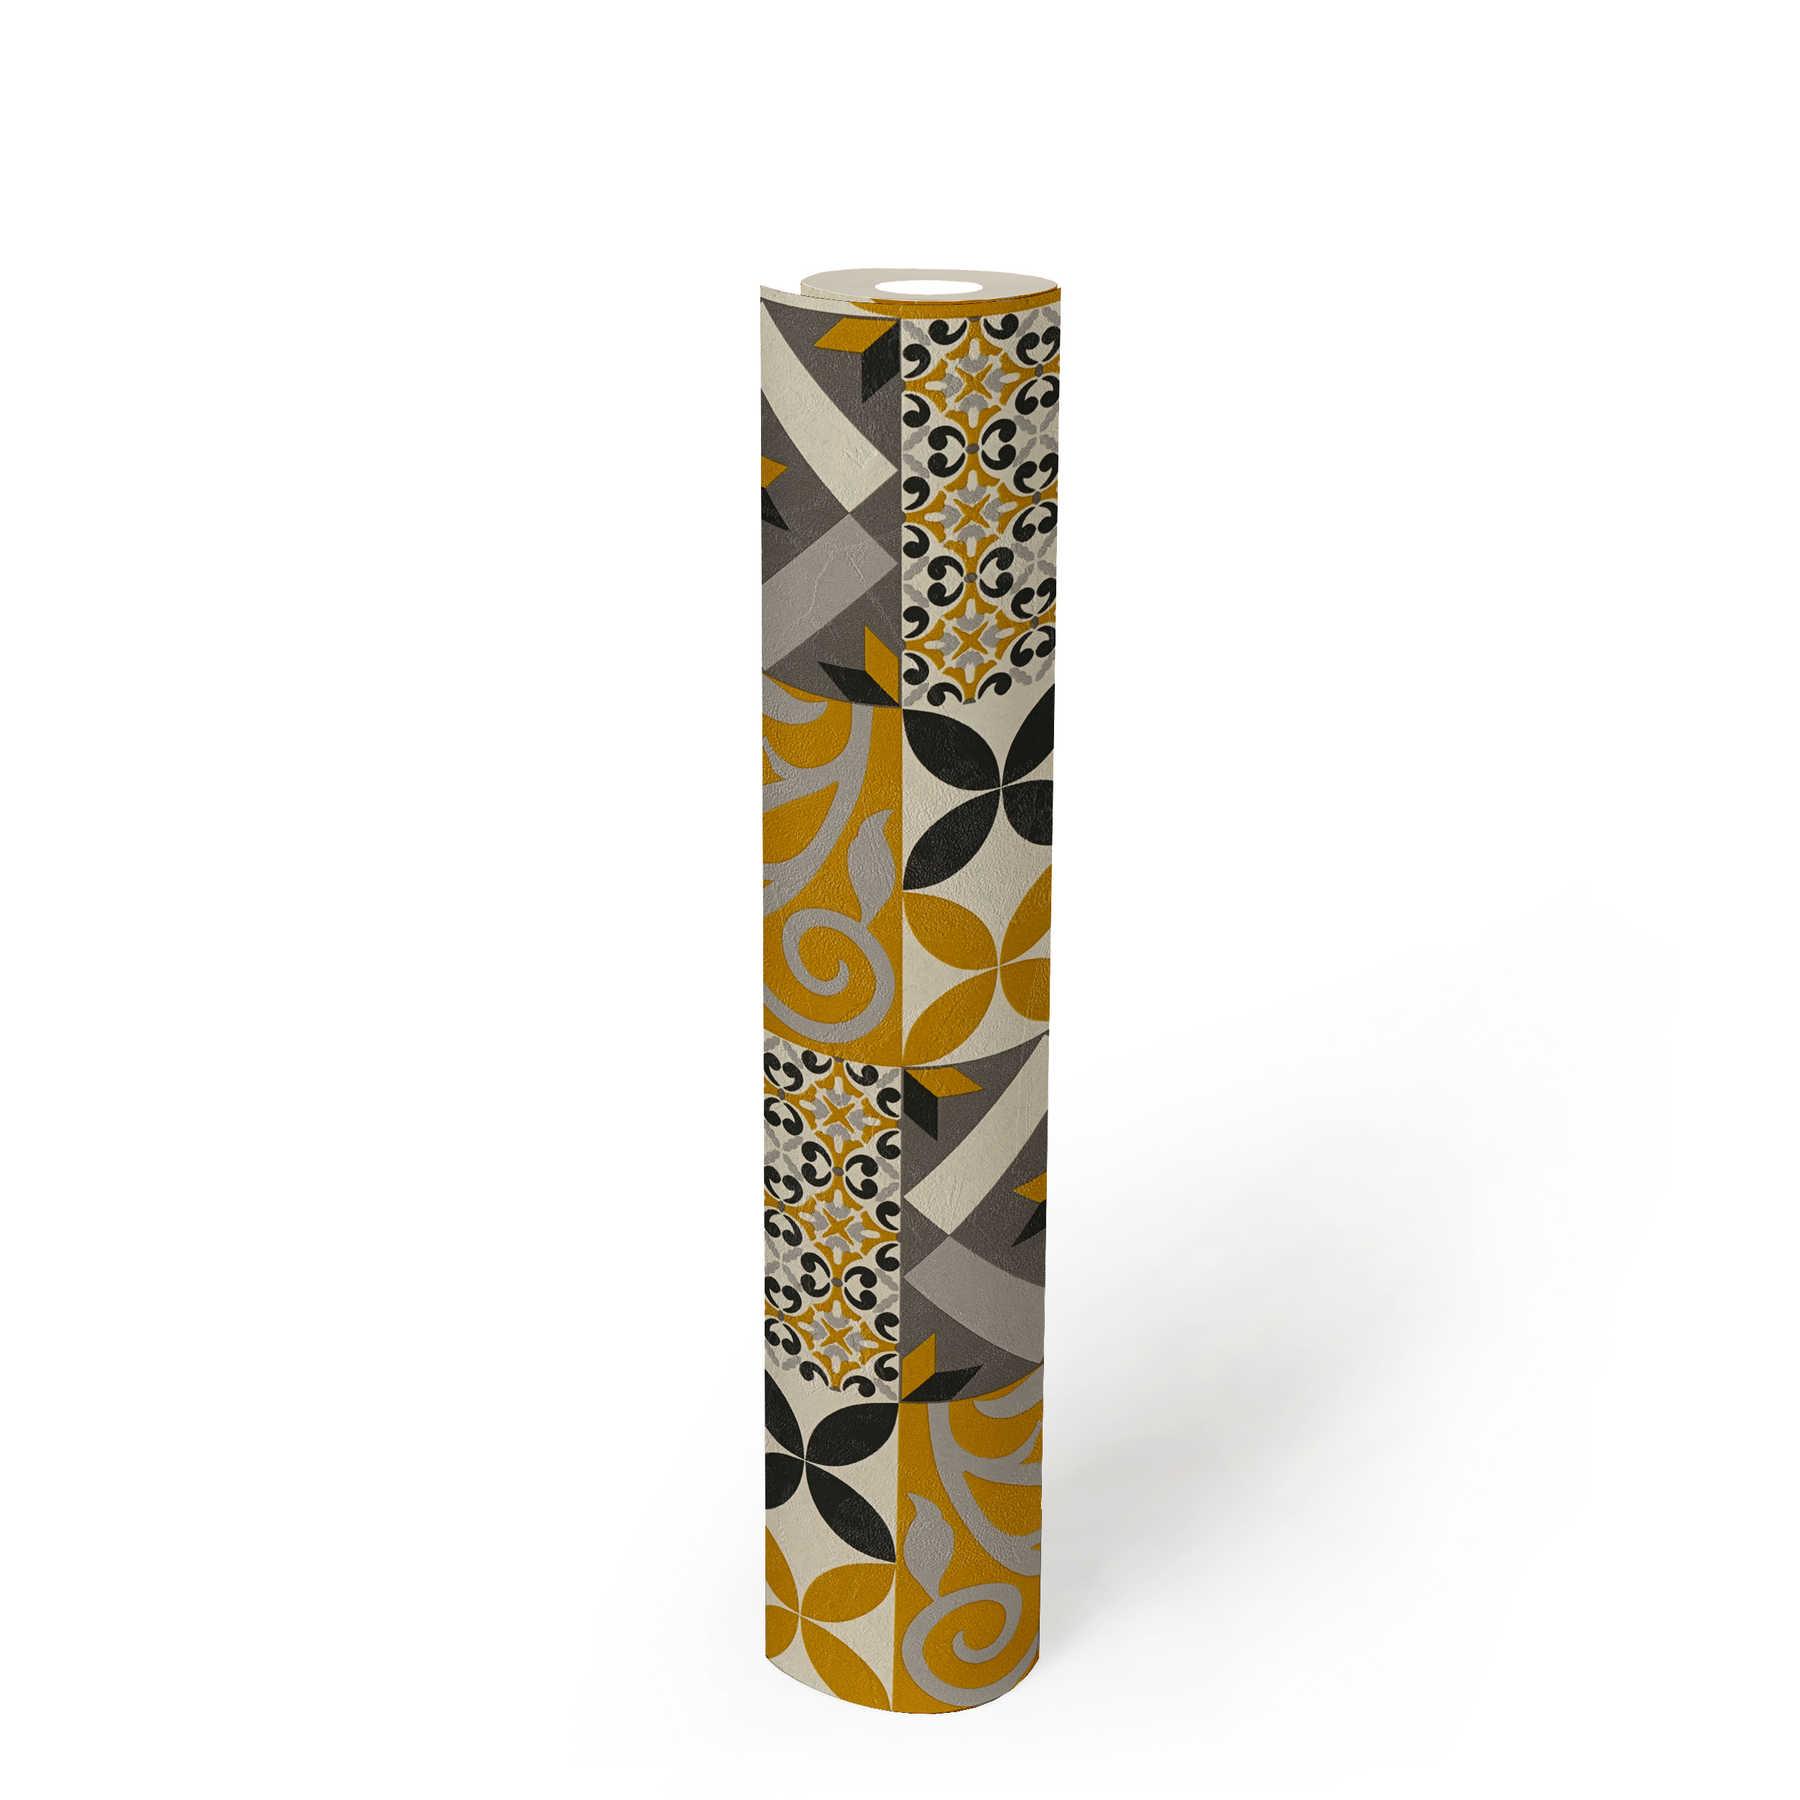             Behang Decor tegels & bloemenpatroon - zwart, geel, antraciet
        